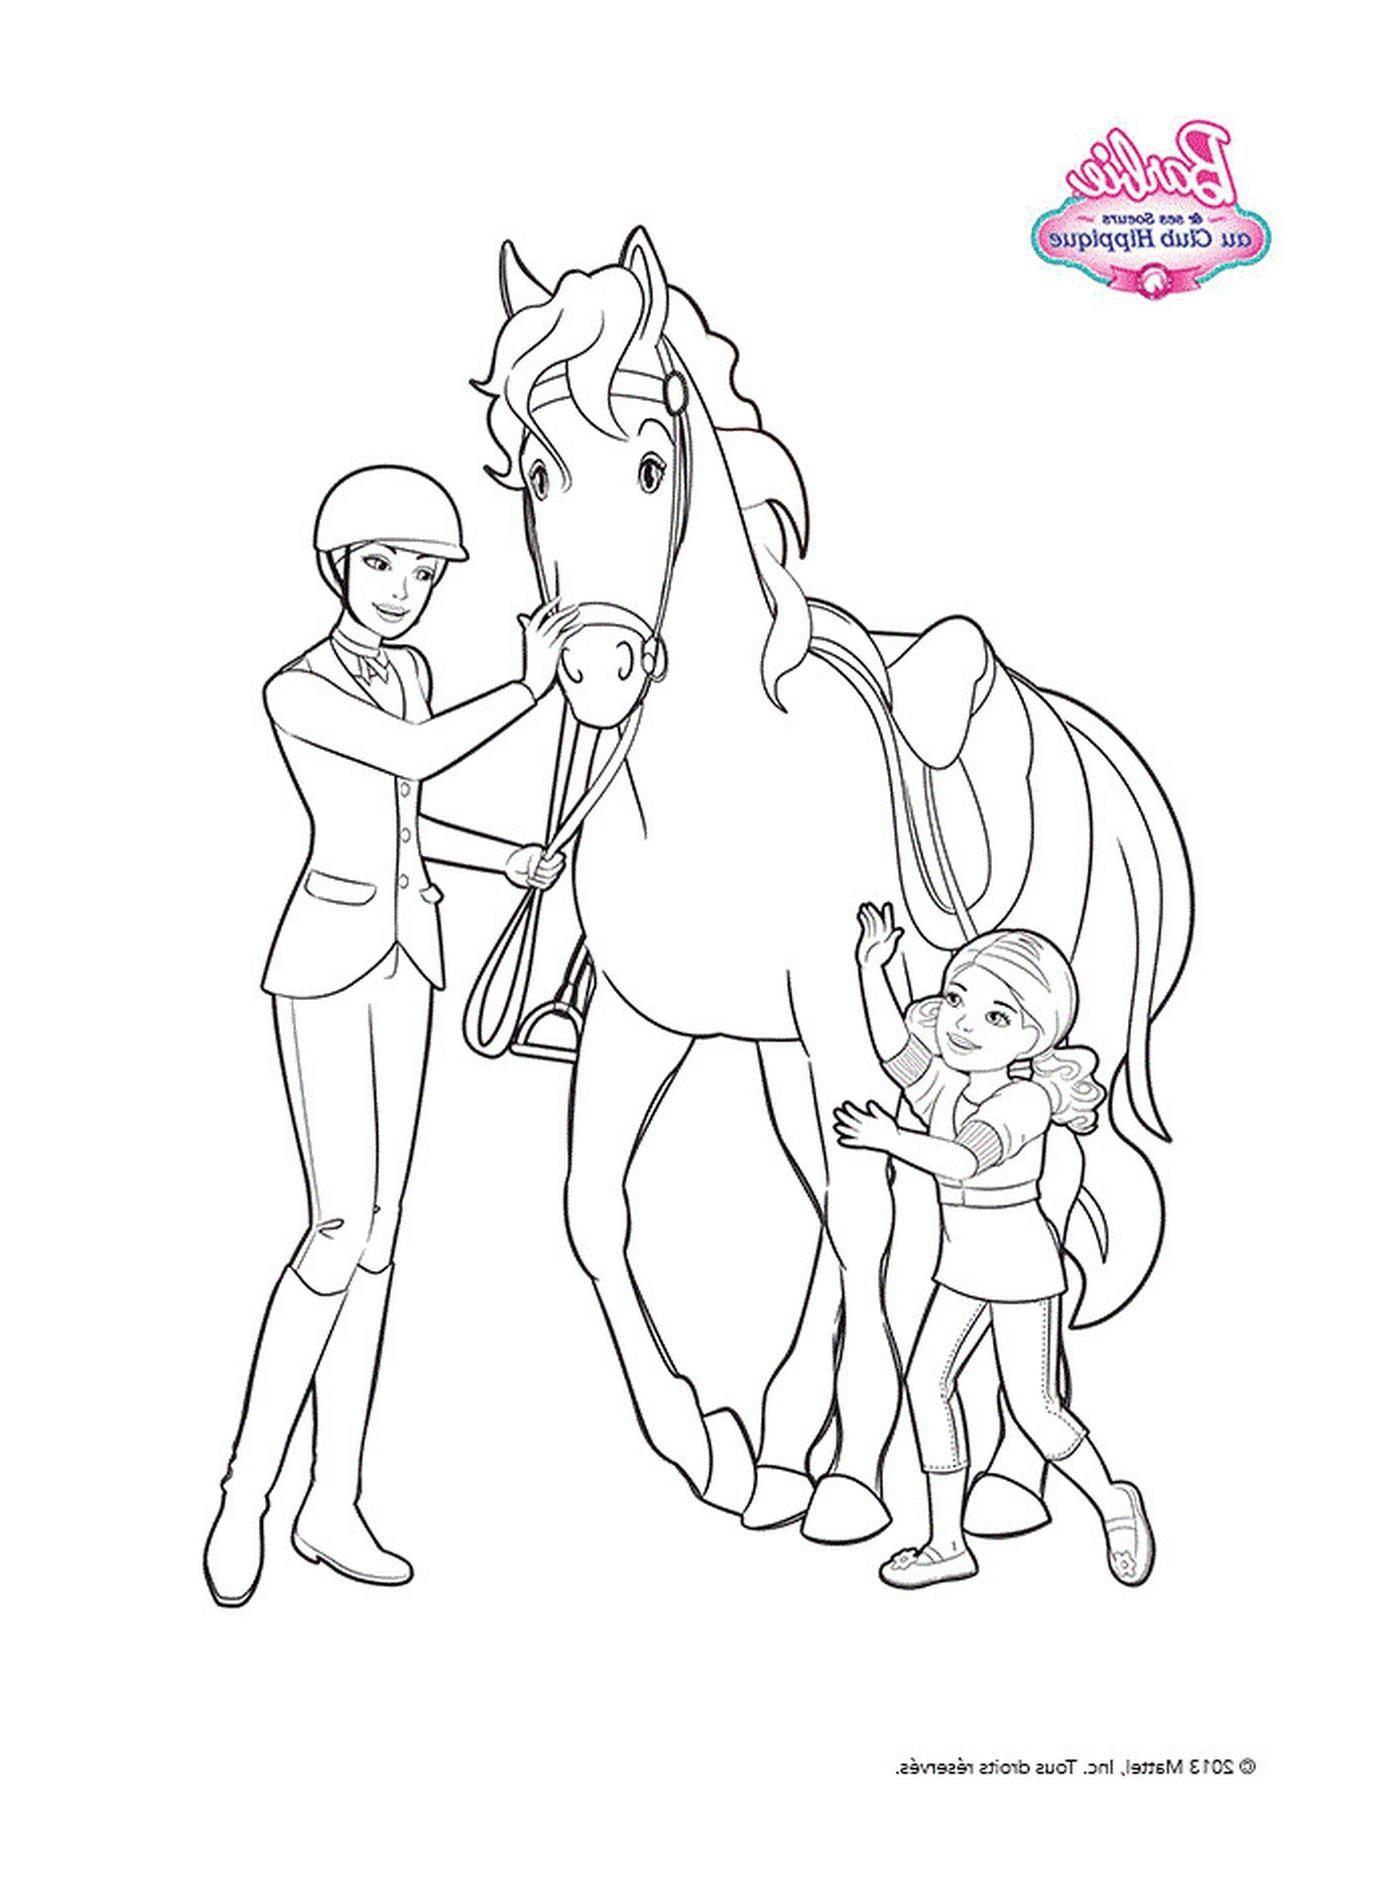  芭比和一个小女孩 站在一匹马旁边 